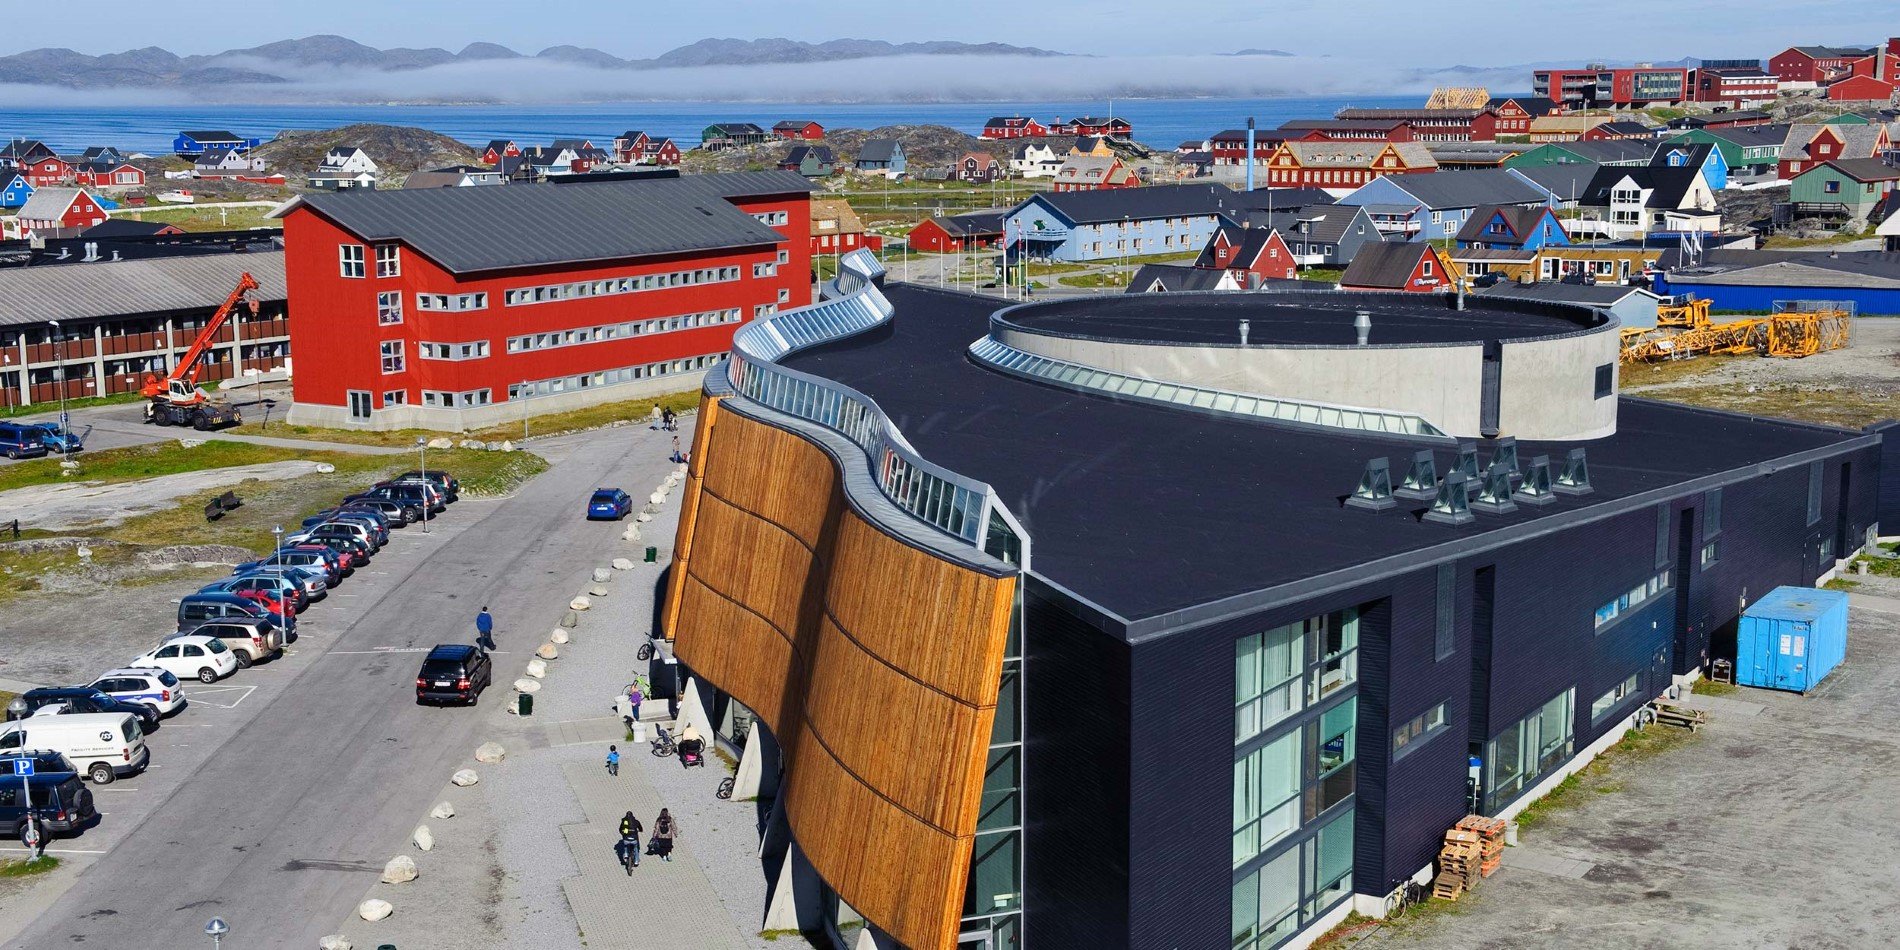 Nuuk culture centre “Katuaq” Greenland architecture